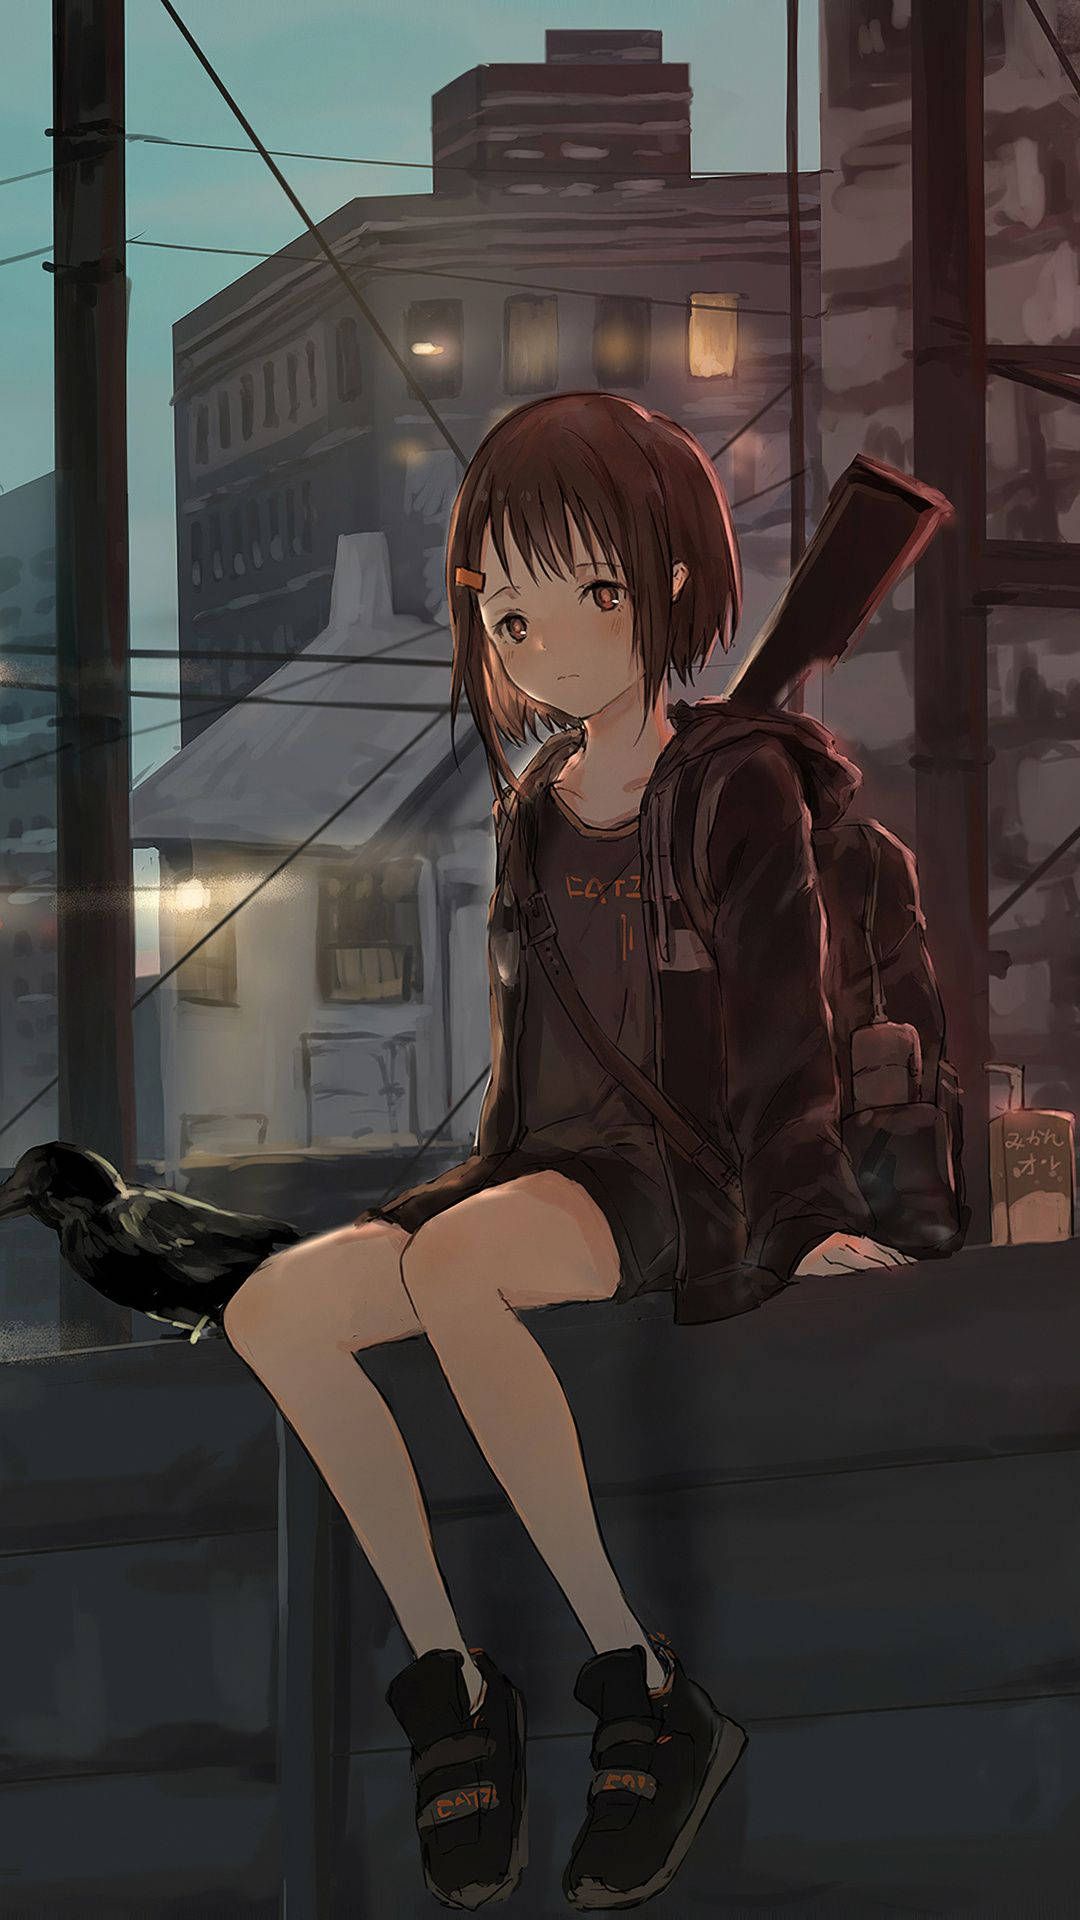 Sad Anime Girl On Ledge Background